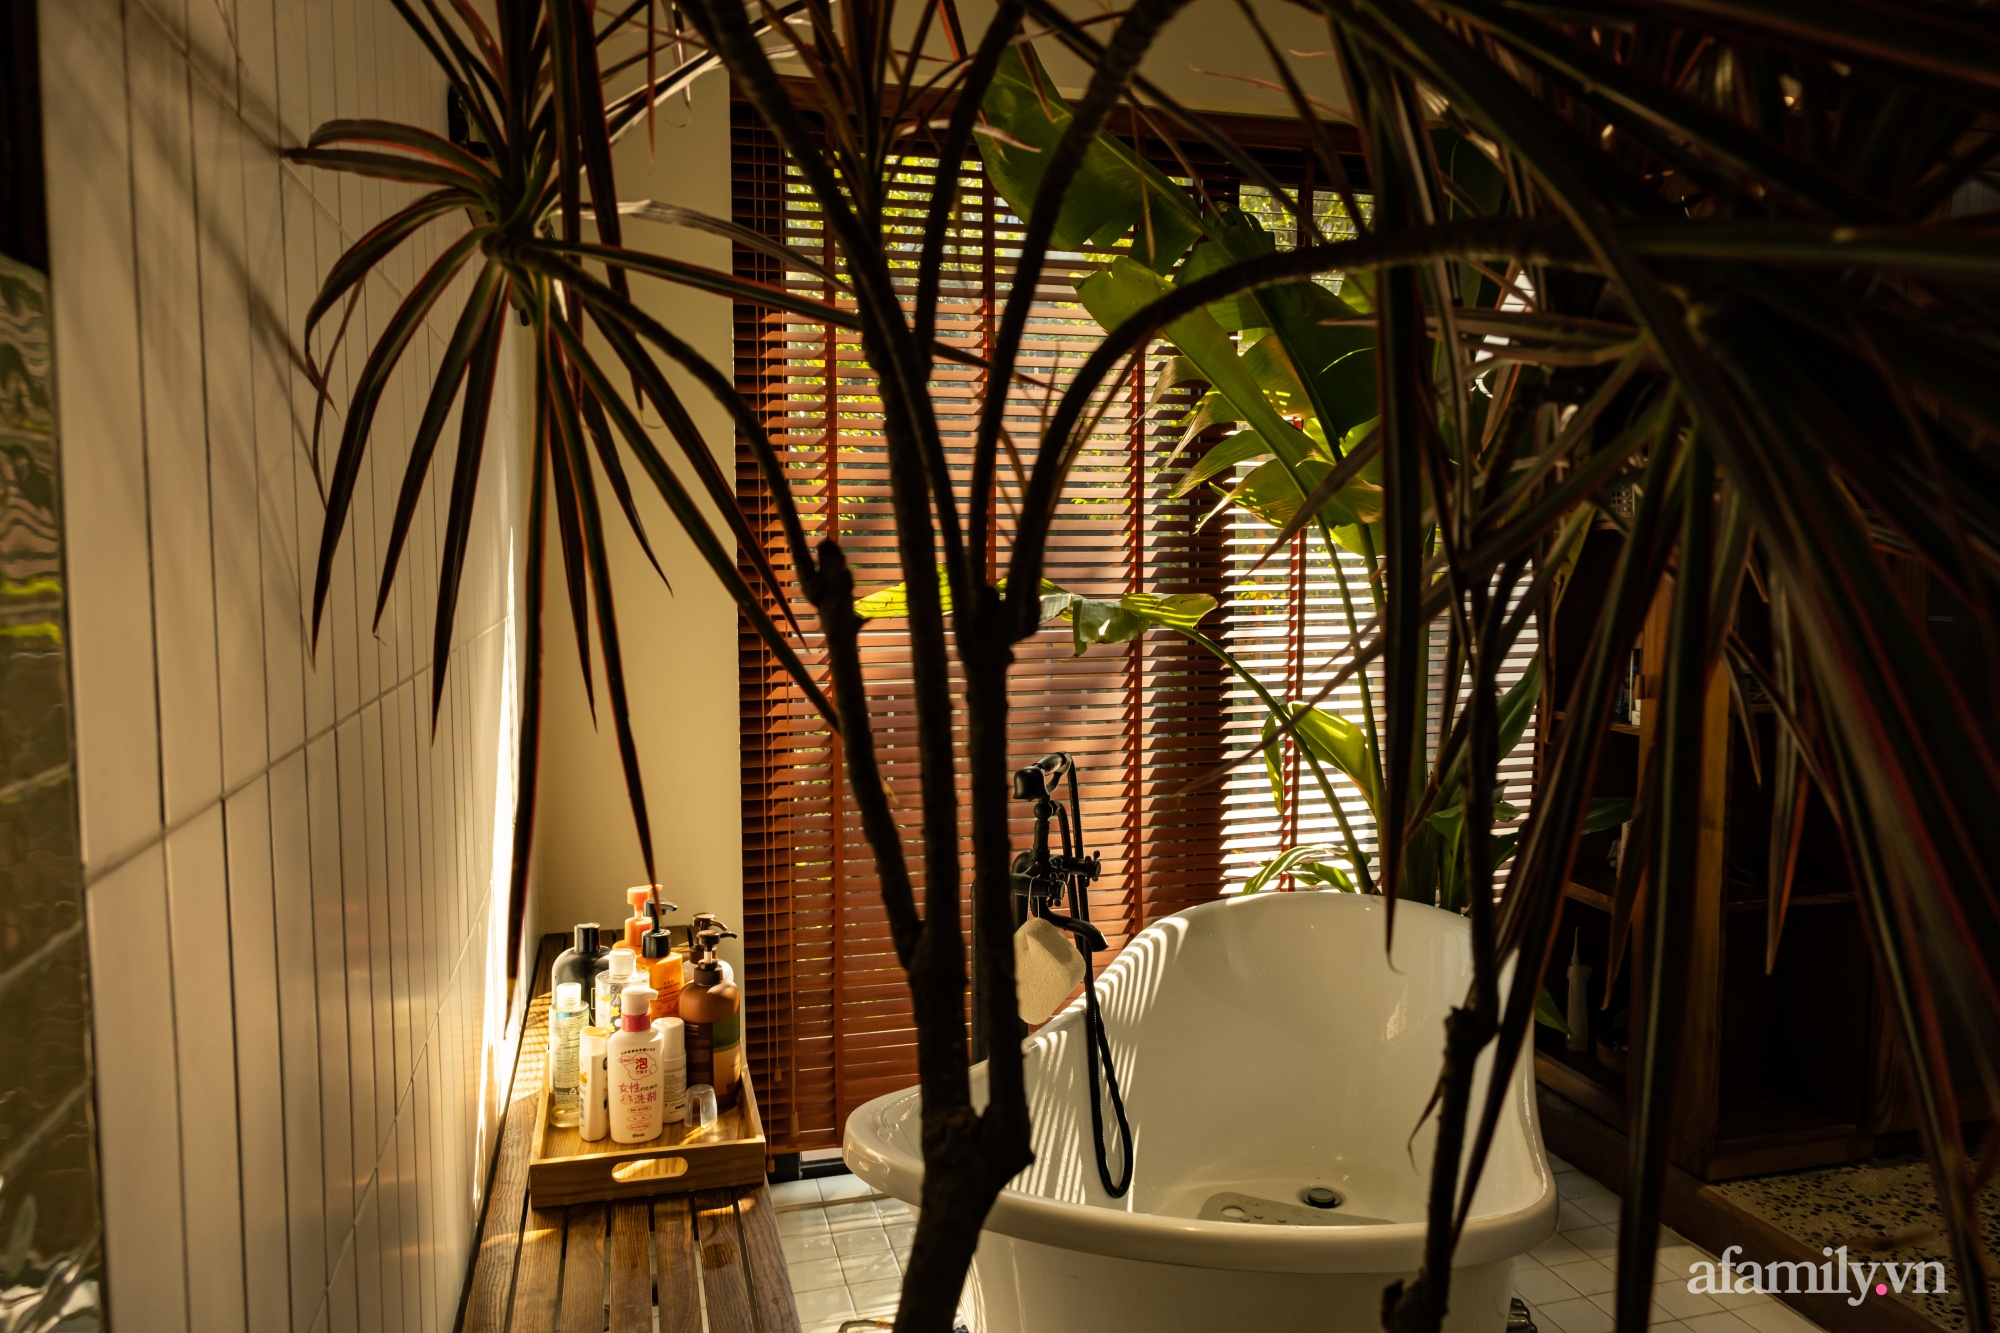 Phòng tắm kết hợp nơi thay đồ đẹp bình yên với sắc màu bản địa có chi phí 200 triệu đồng ở ngoại thành Hà Nội - Ảnh 7.